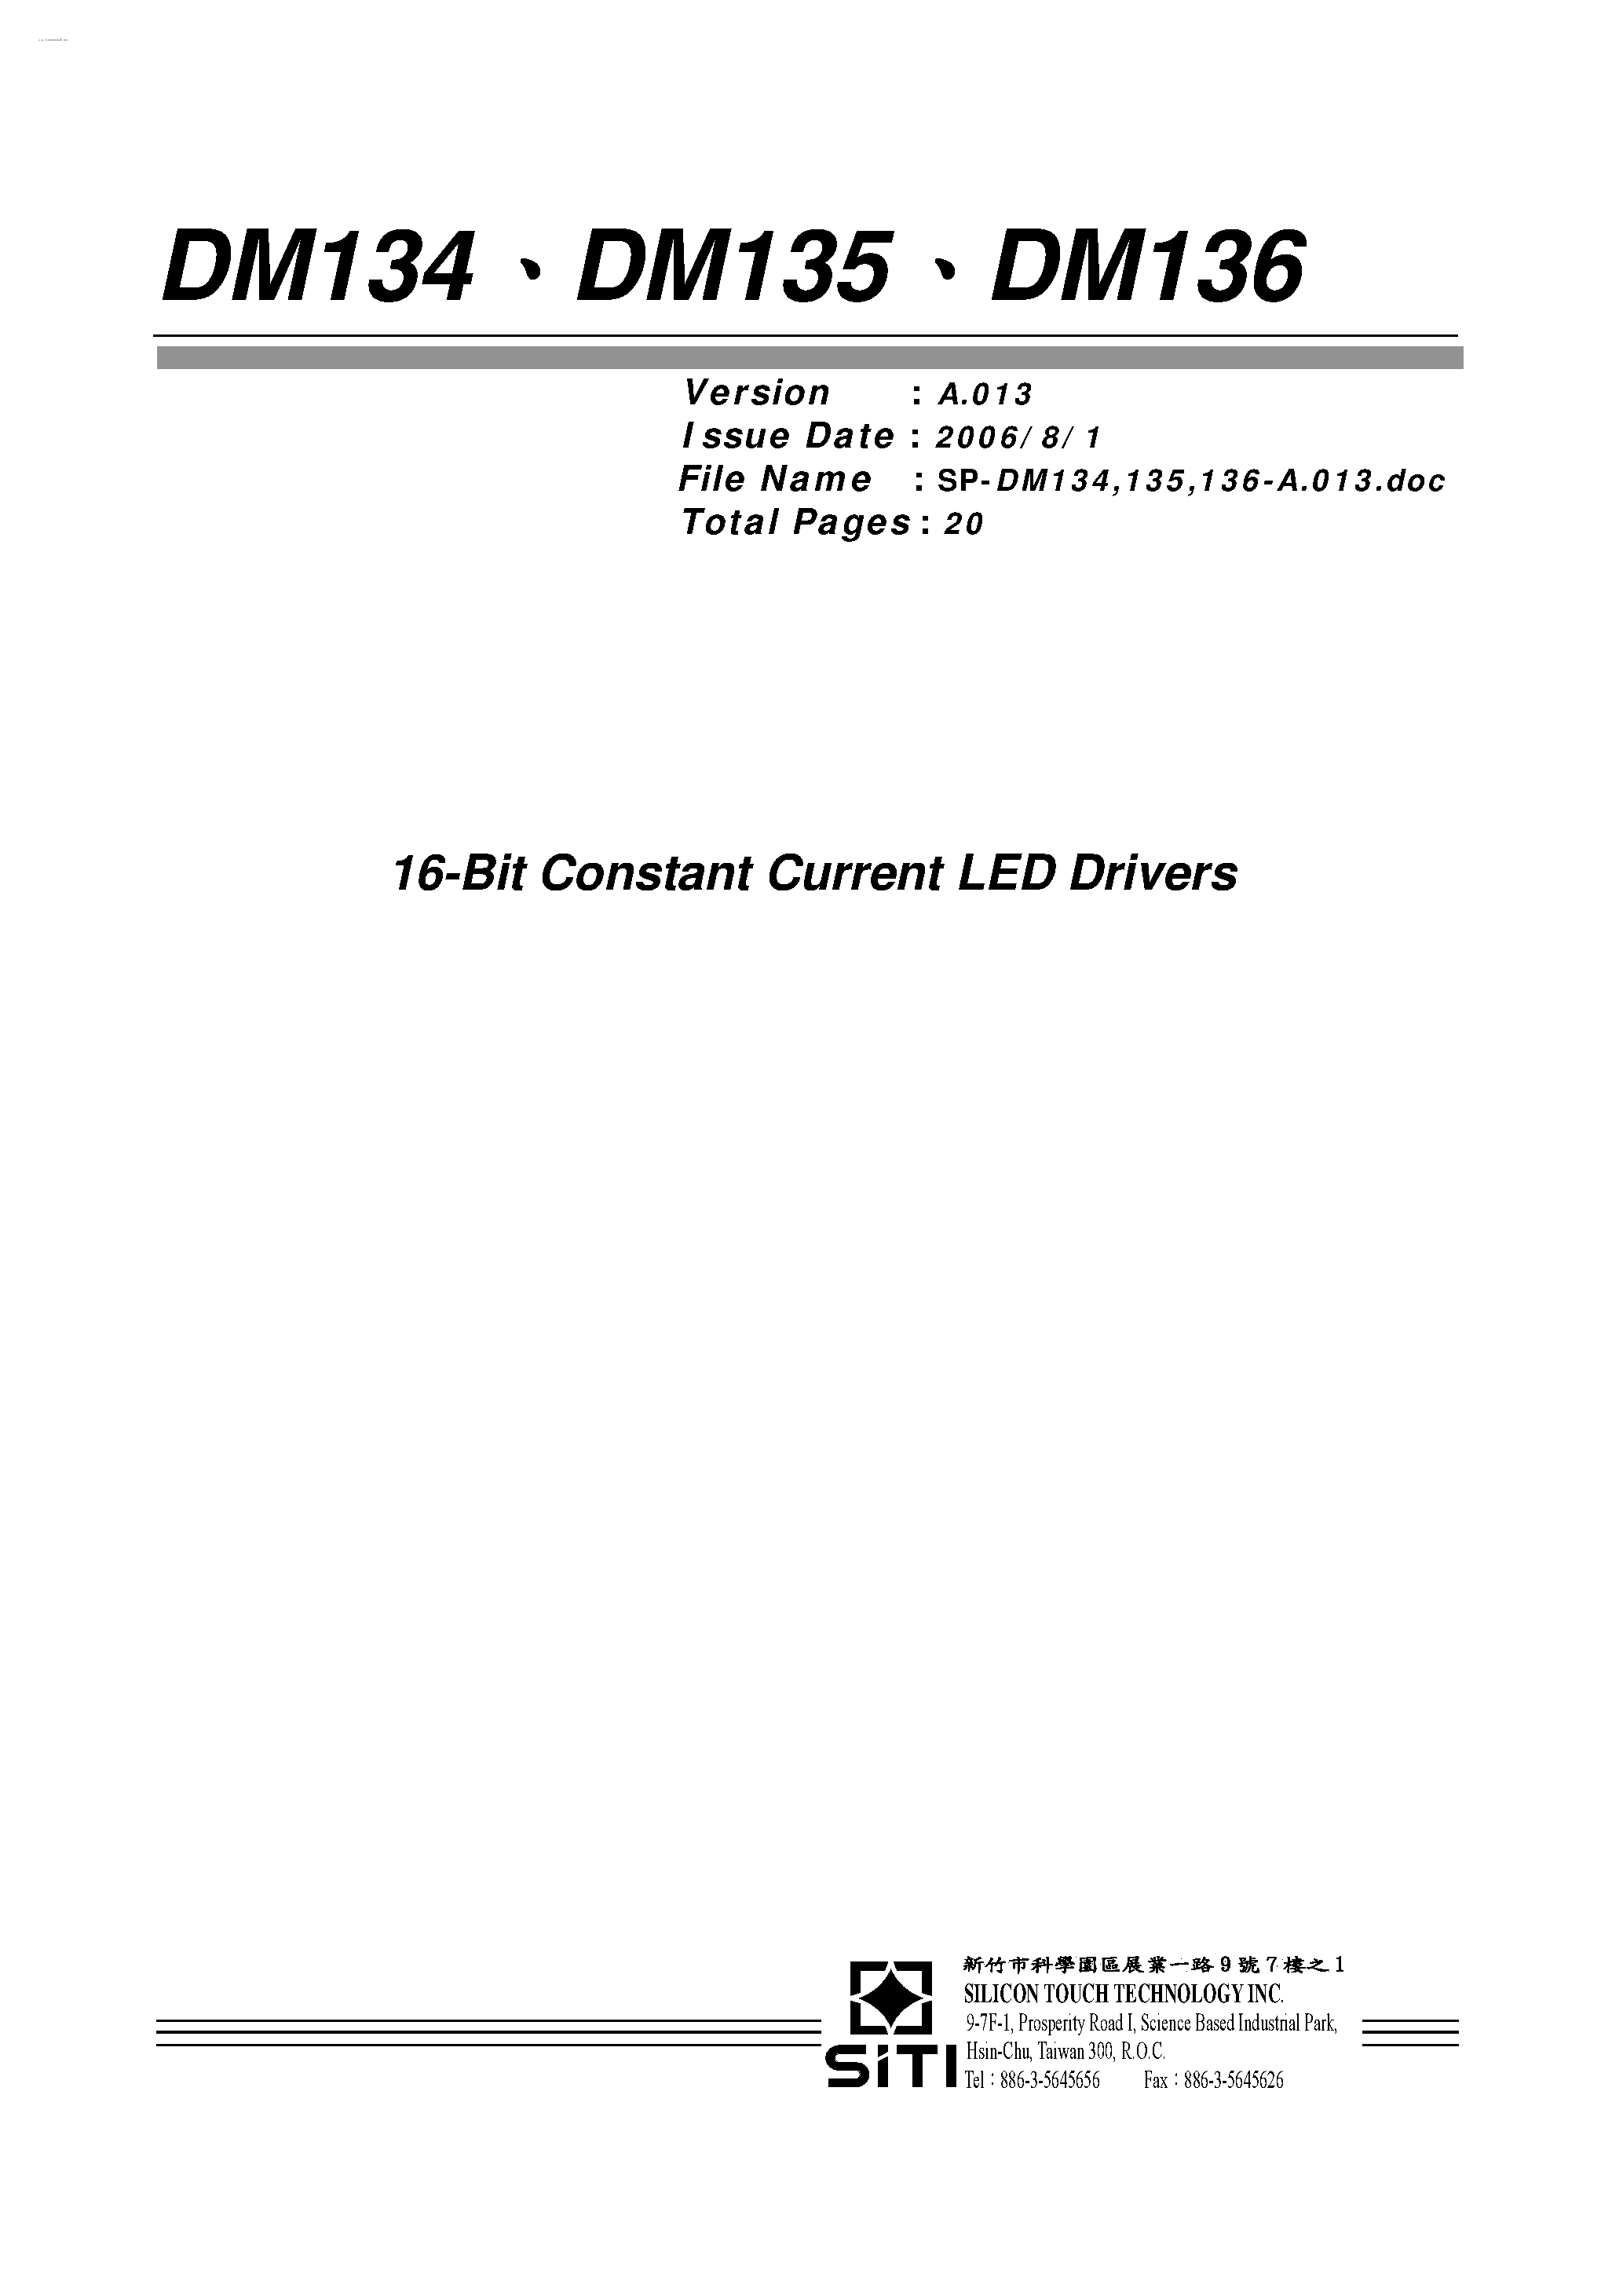 Datasheet DM134 - (DM134 - DM136) 16-Bit Constant Current LED Drivers page 1